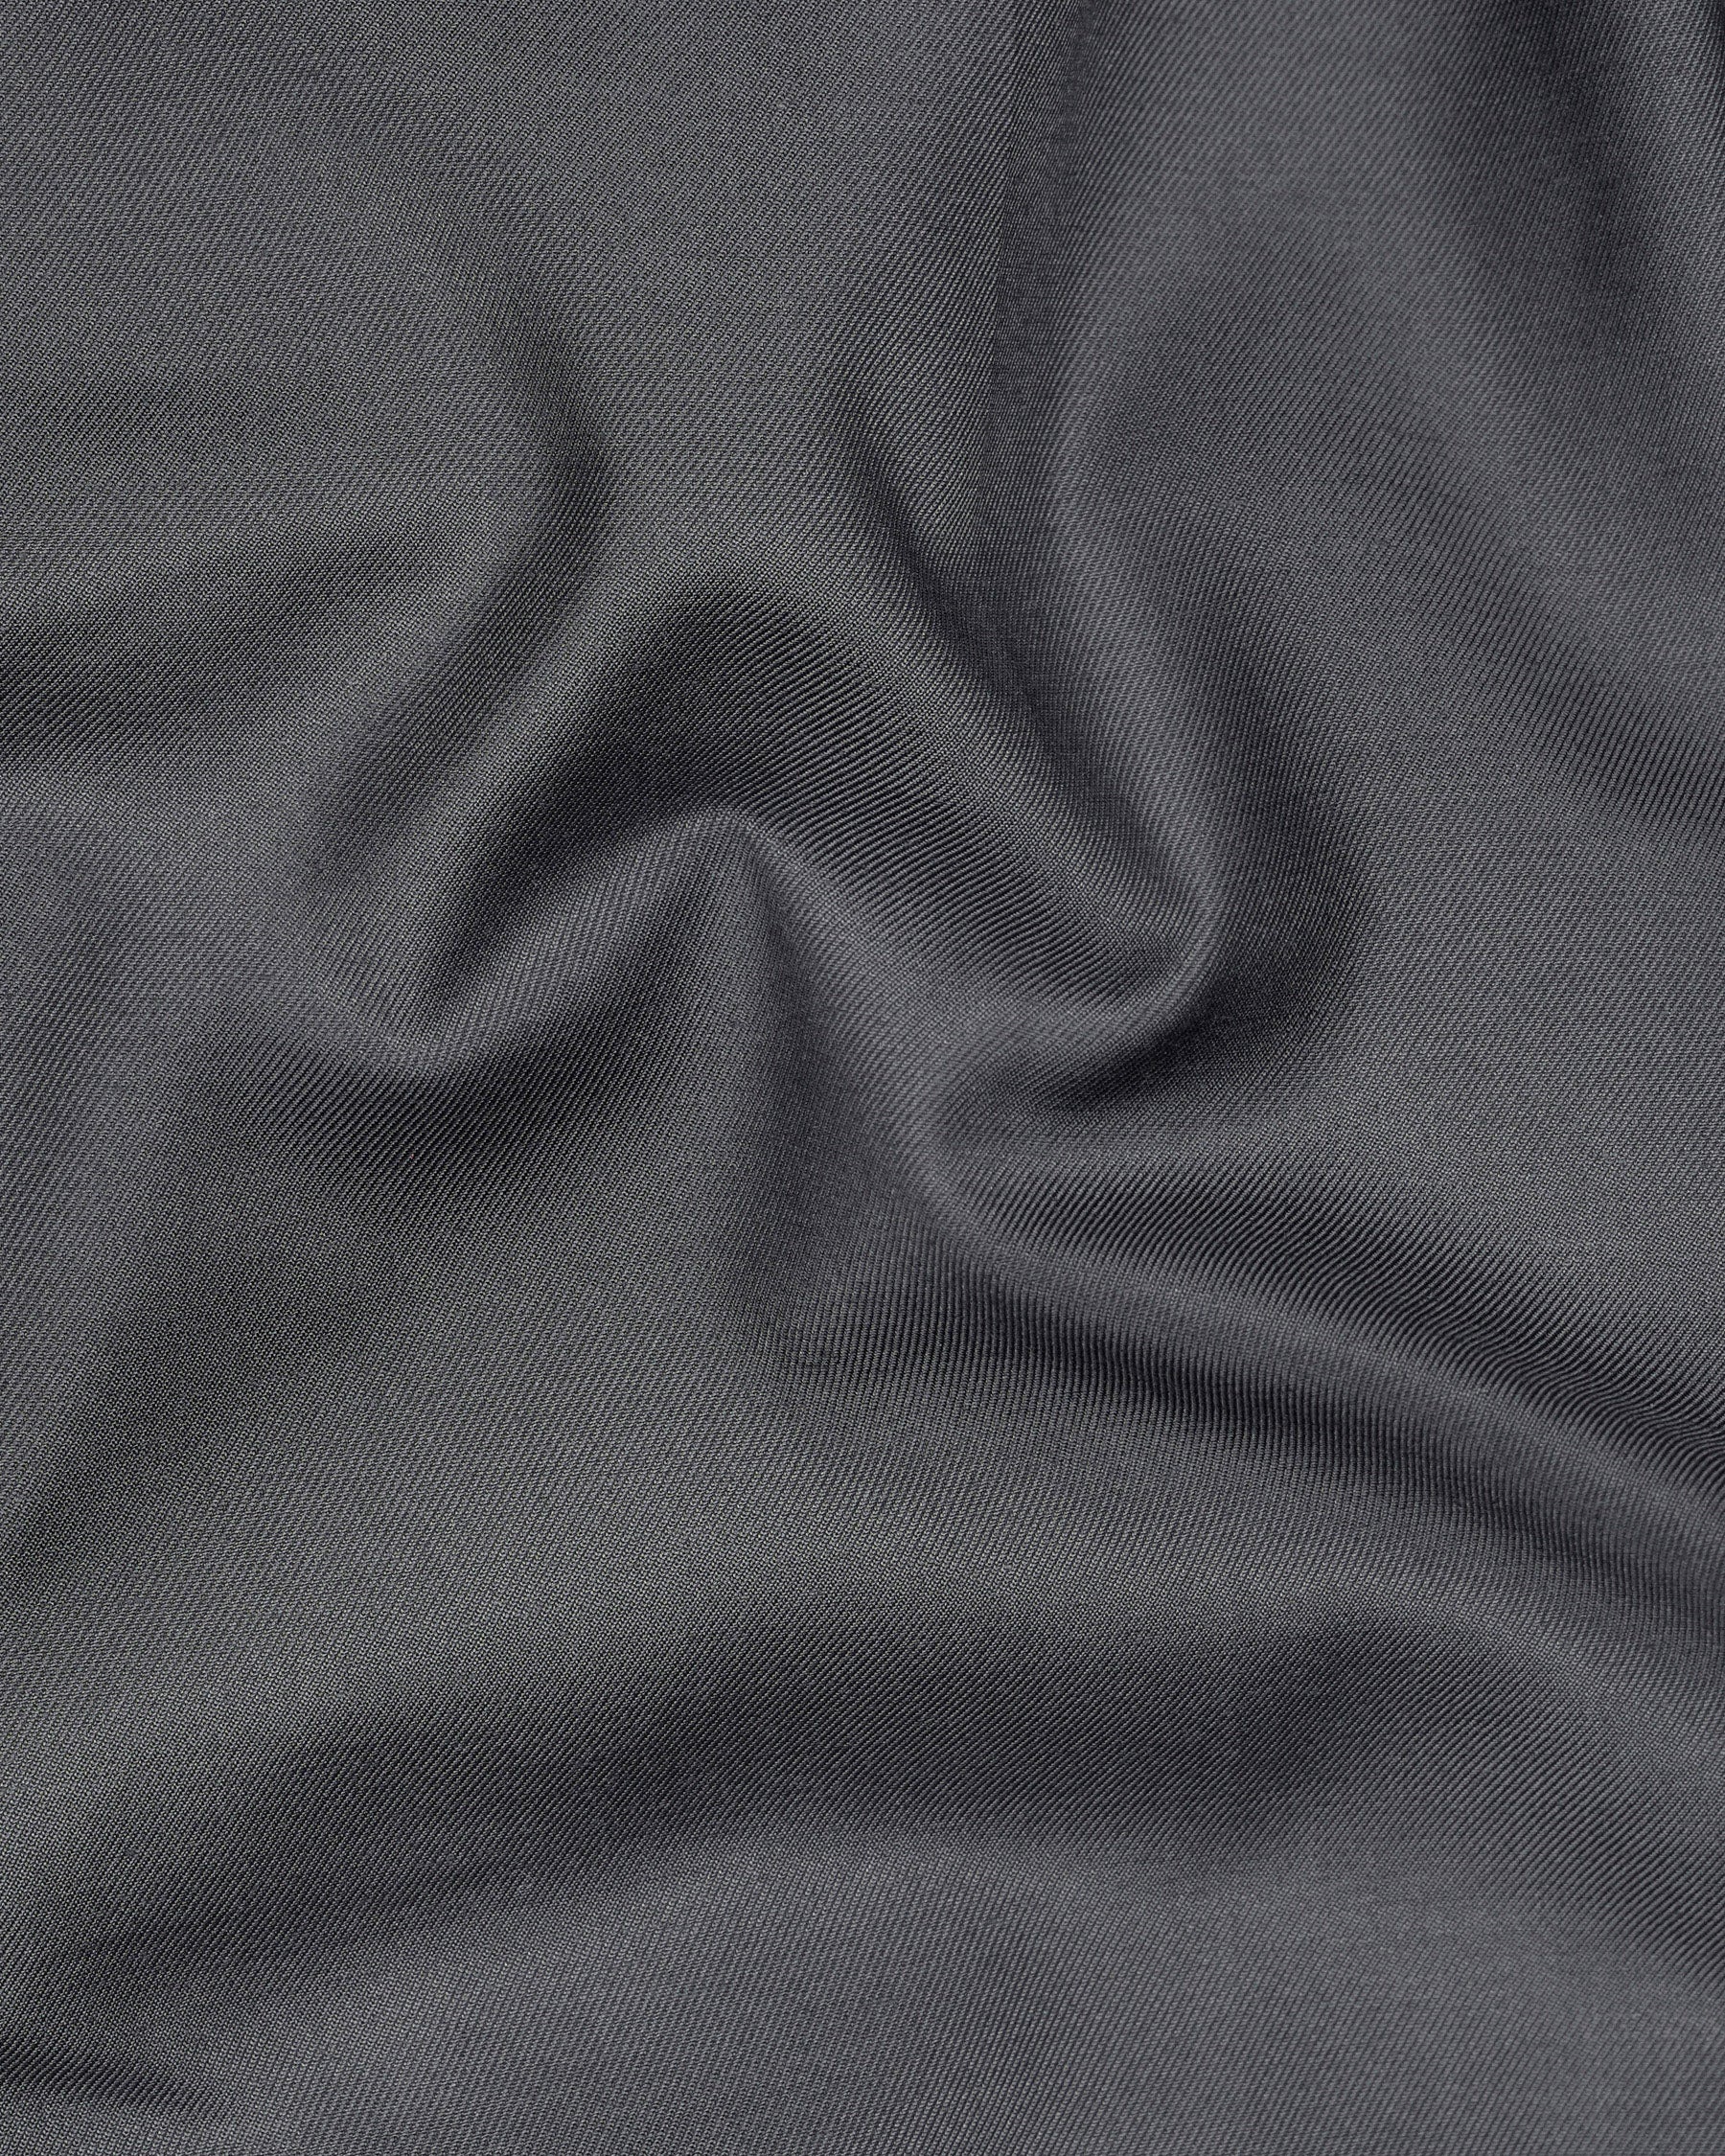 Vampire Gray Textured Pant T2009-28, T2009-30, T2009-32, T2009-34, T2009-36, T2009-38, T2009-40, T2009-42, T2009-44